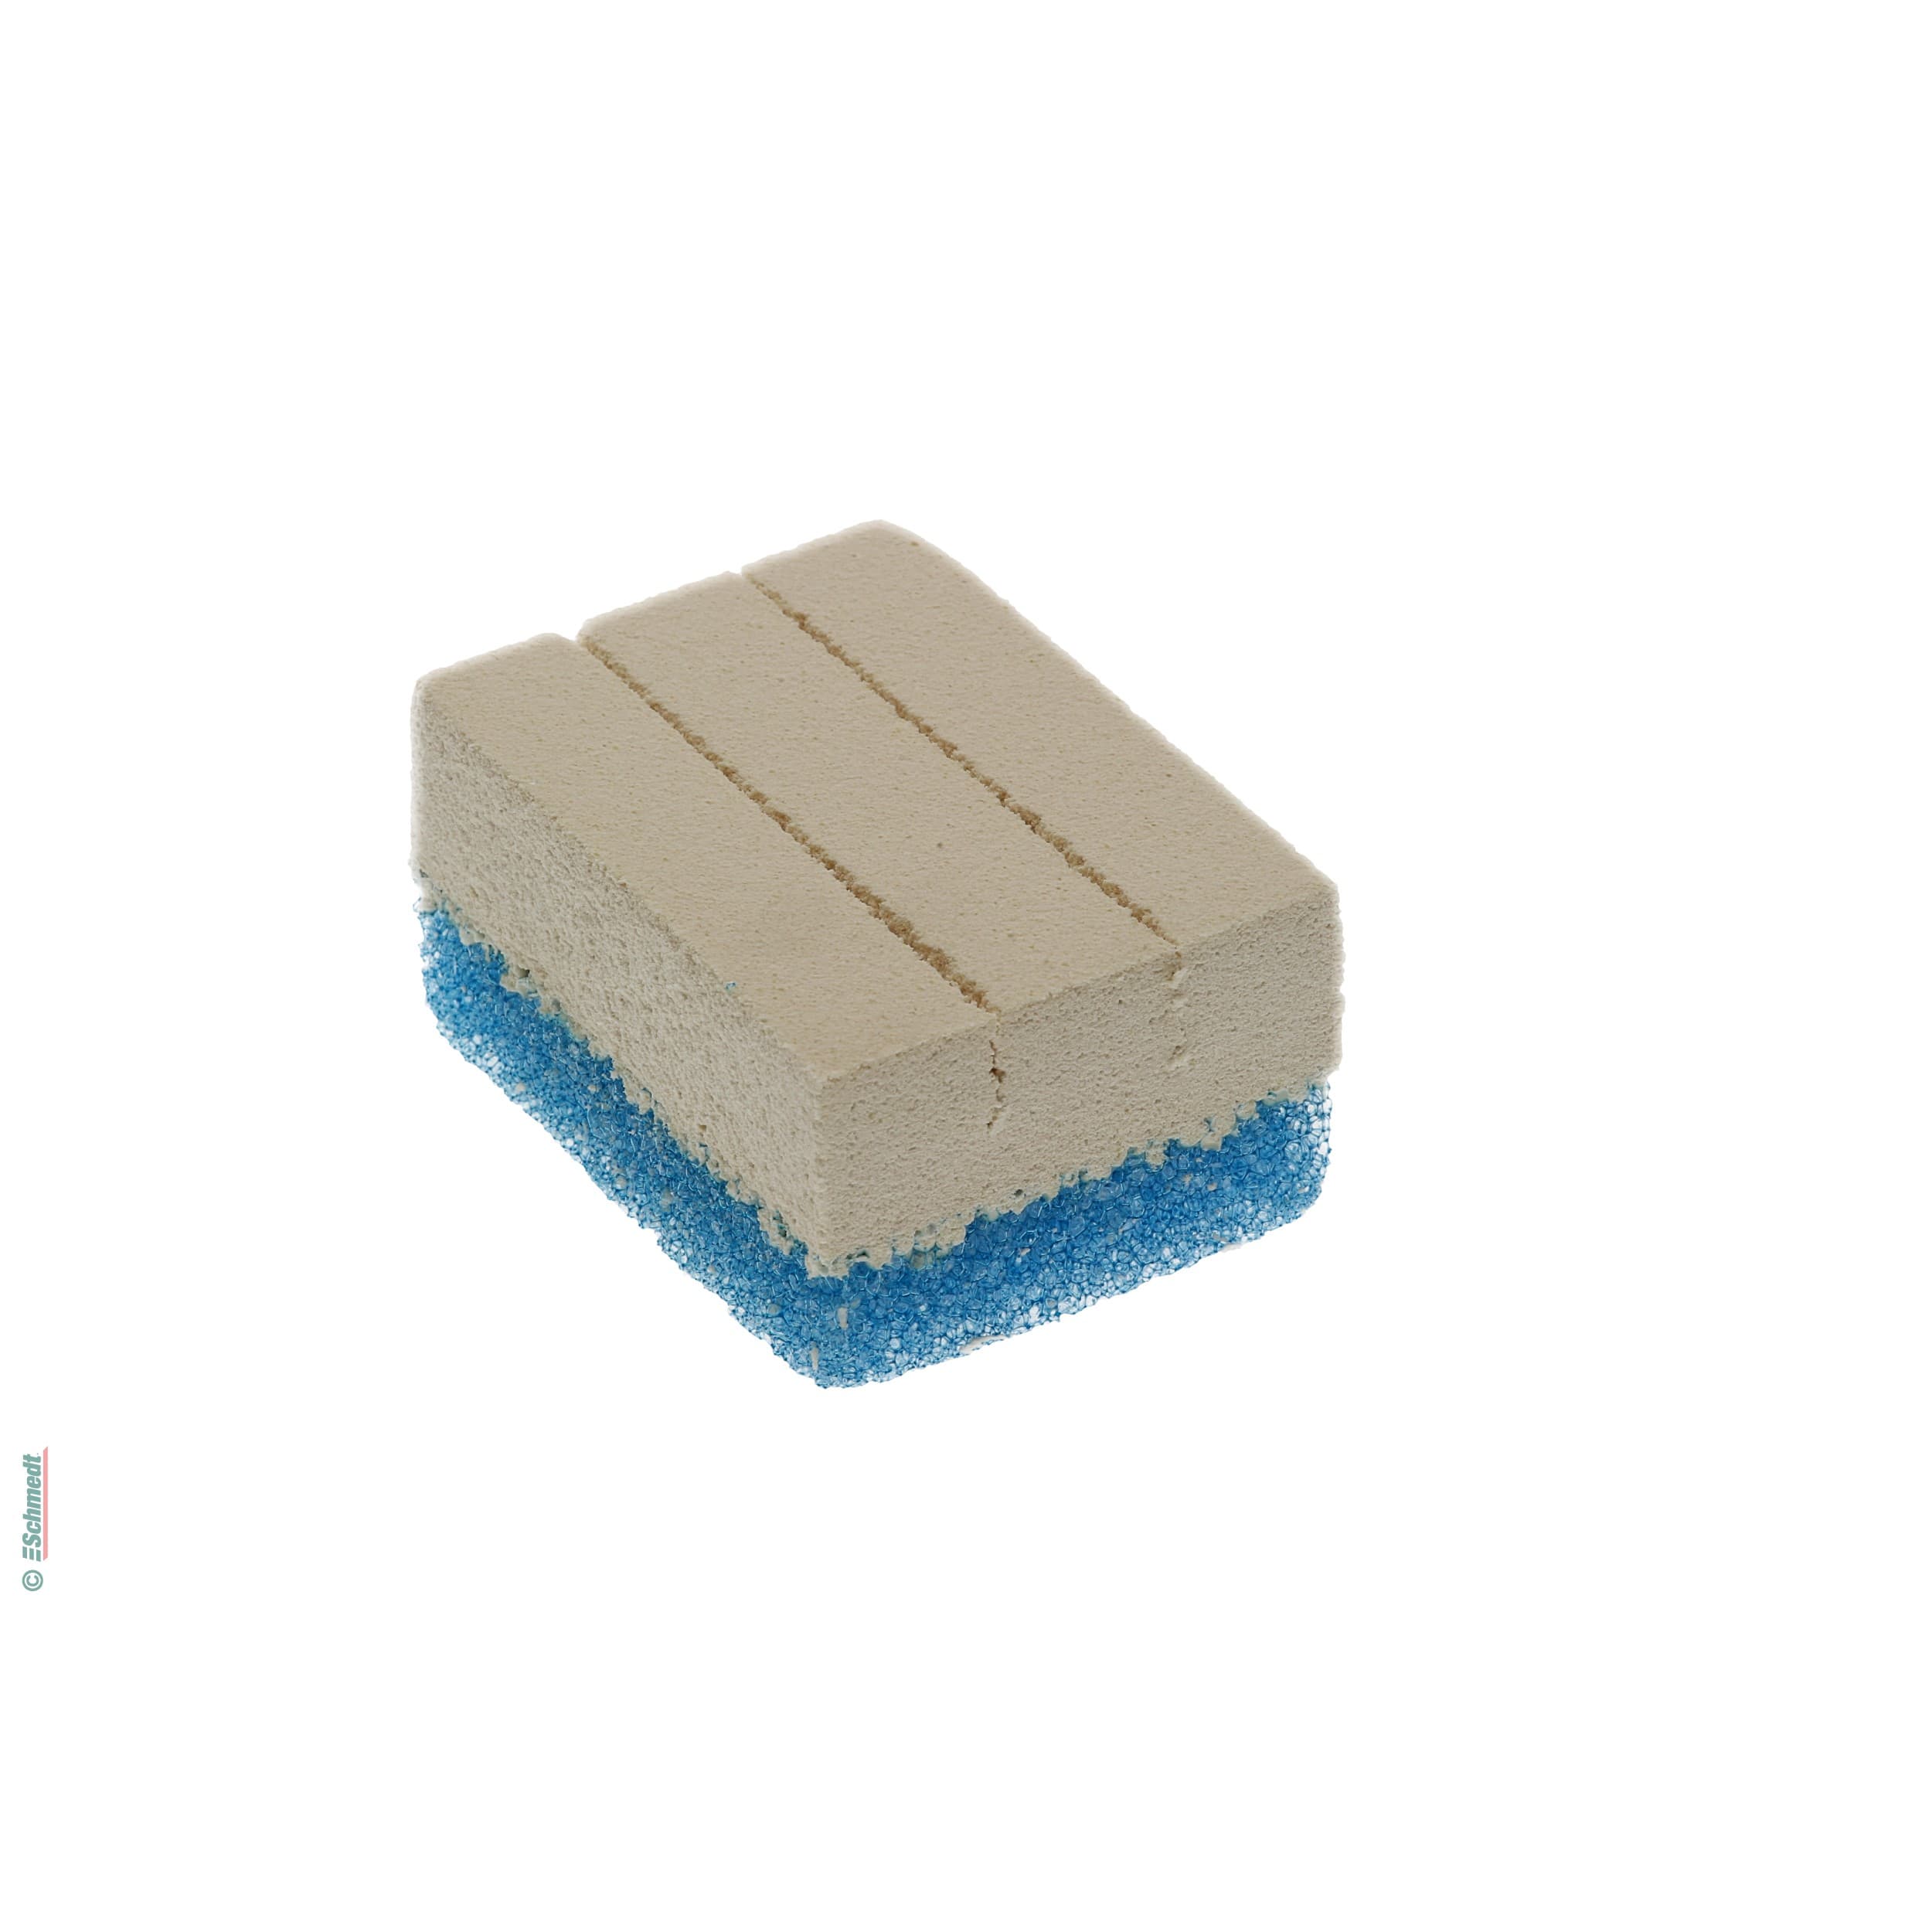 WISHAB-esponja para papeles (AKAPAD) - de látex vulcanizado, pH neutral, blanca - para limpieza en seco de suciedad en superficies. El mater...